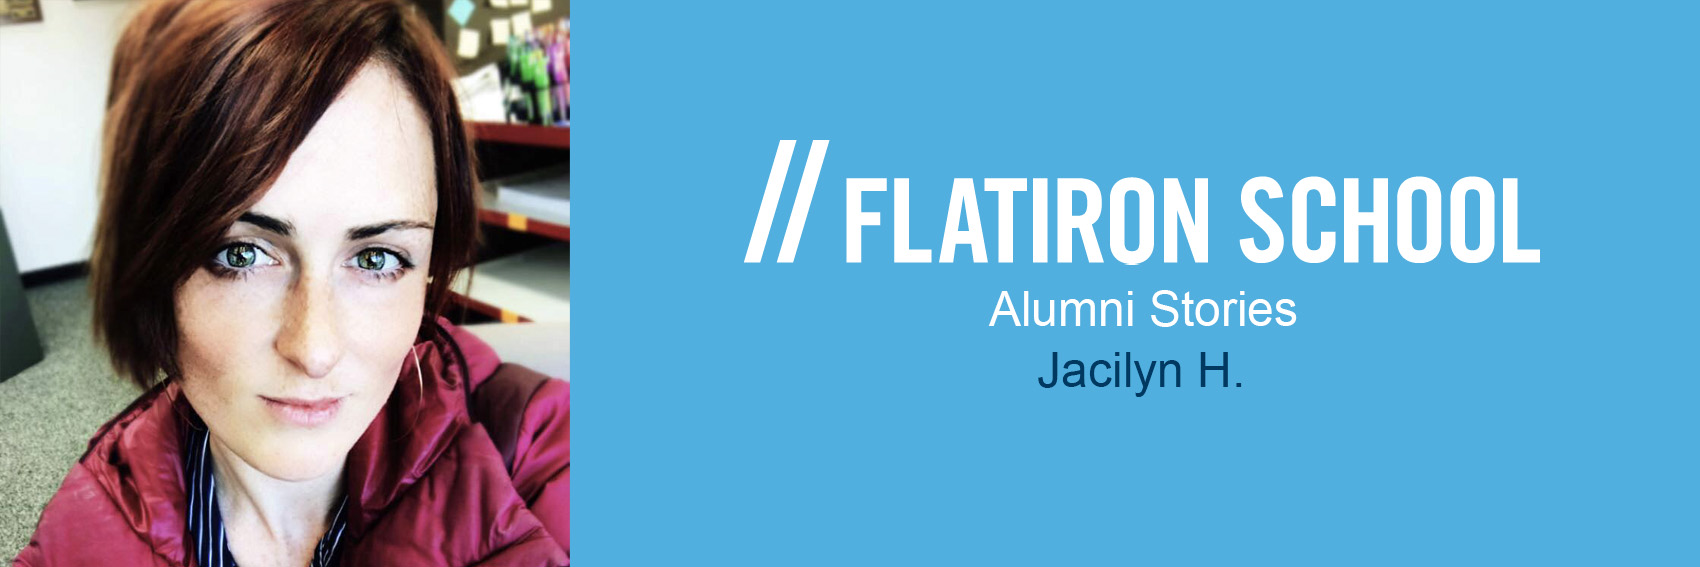 Blog post image: jc-alumni-banner.jpg